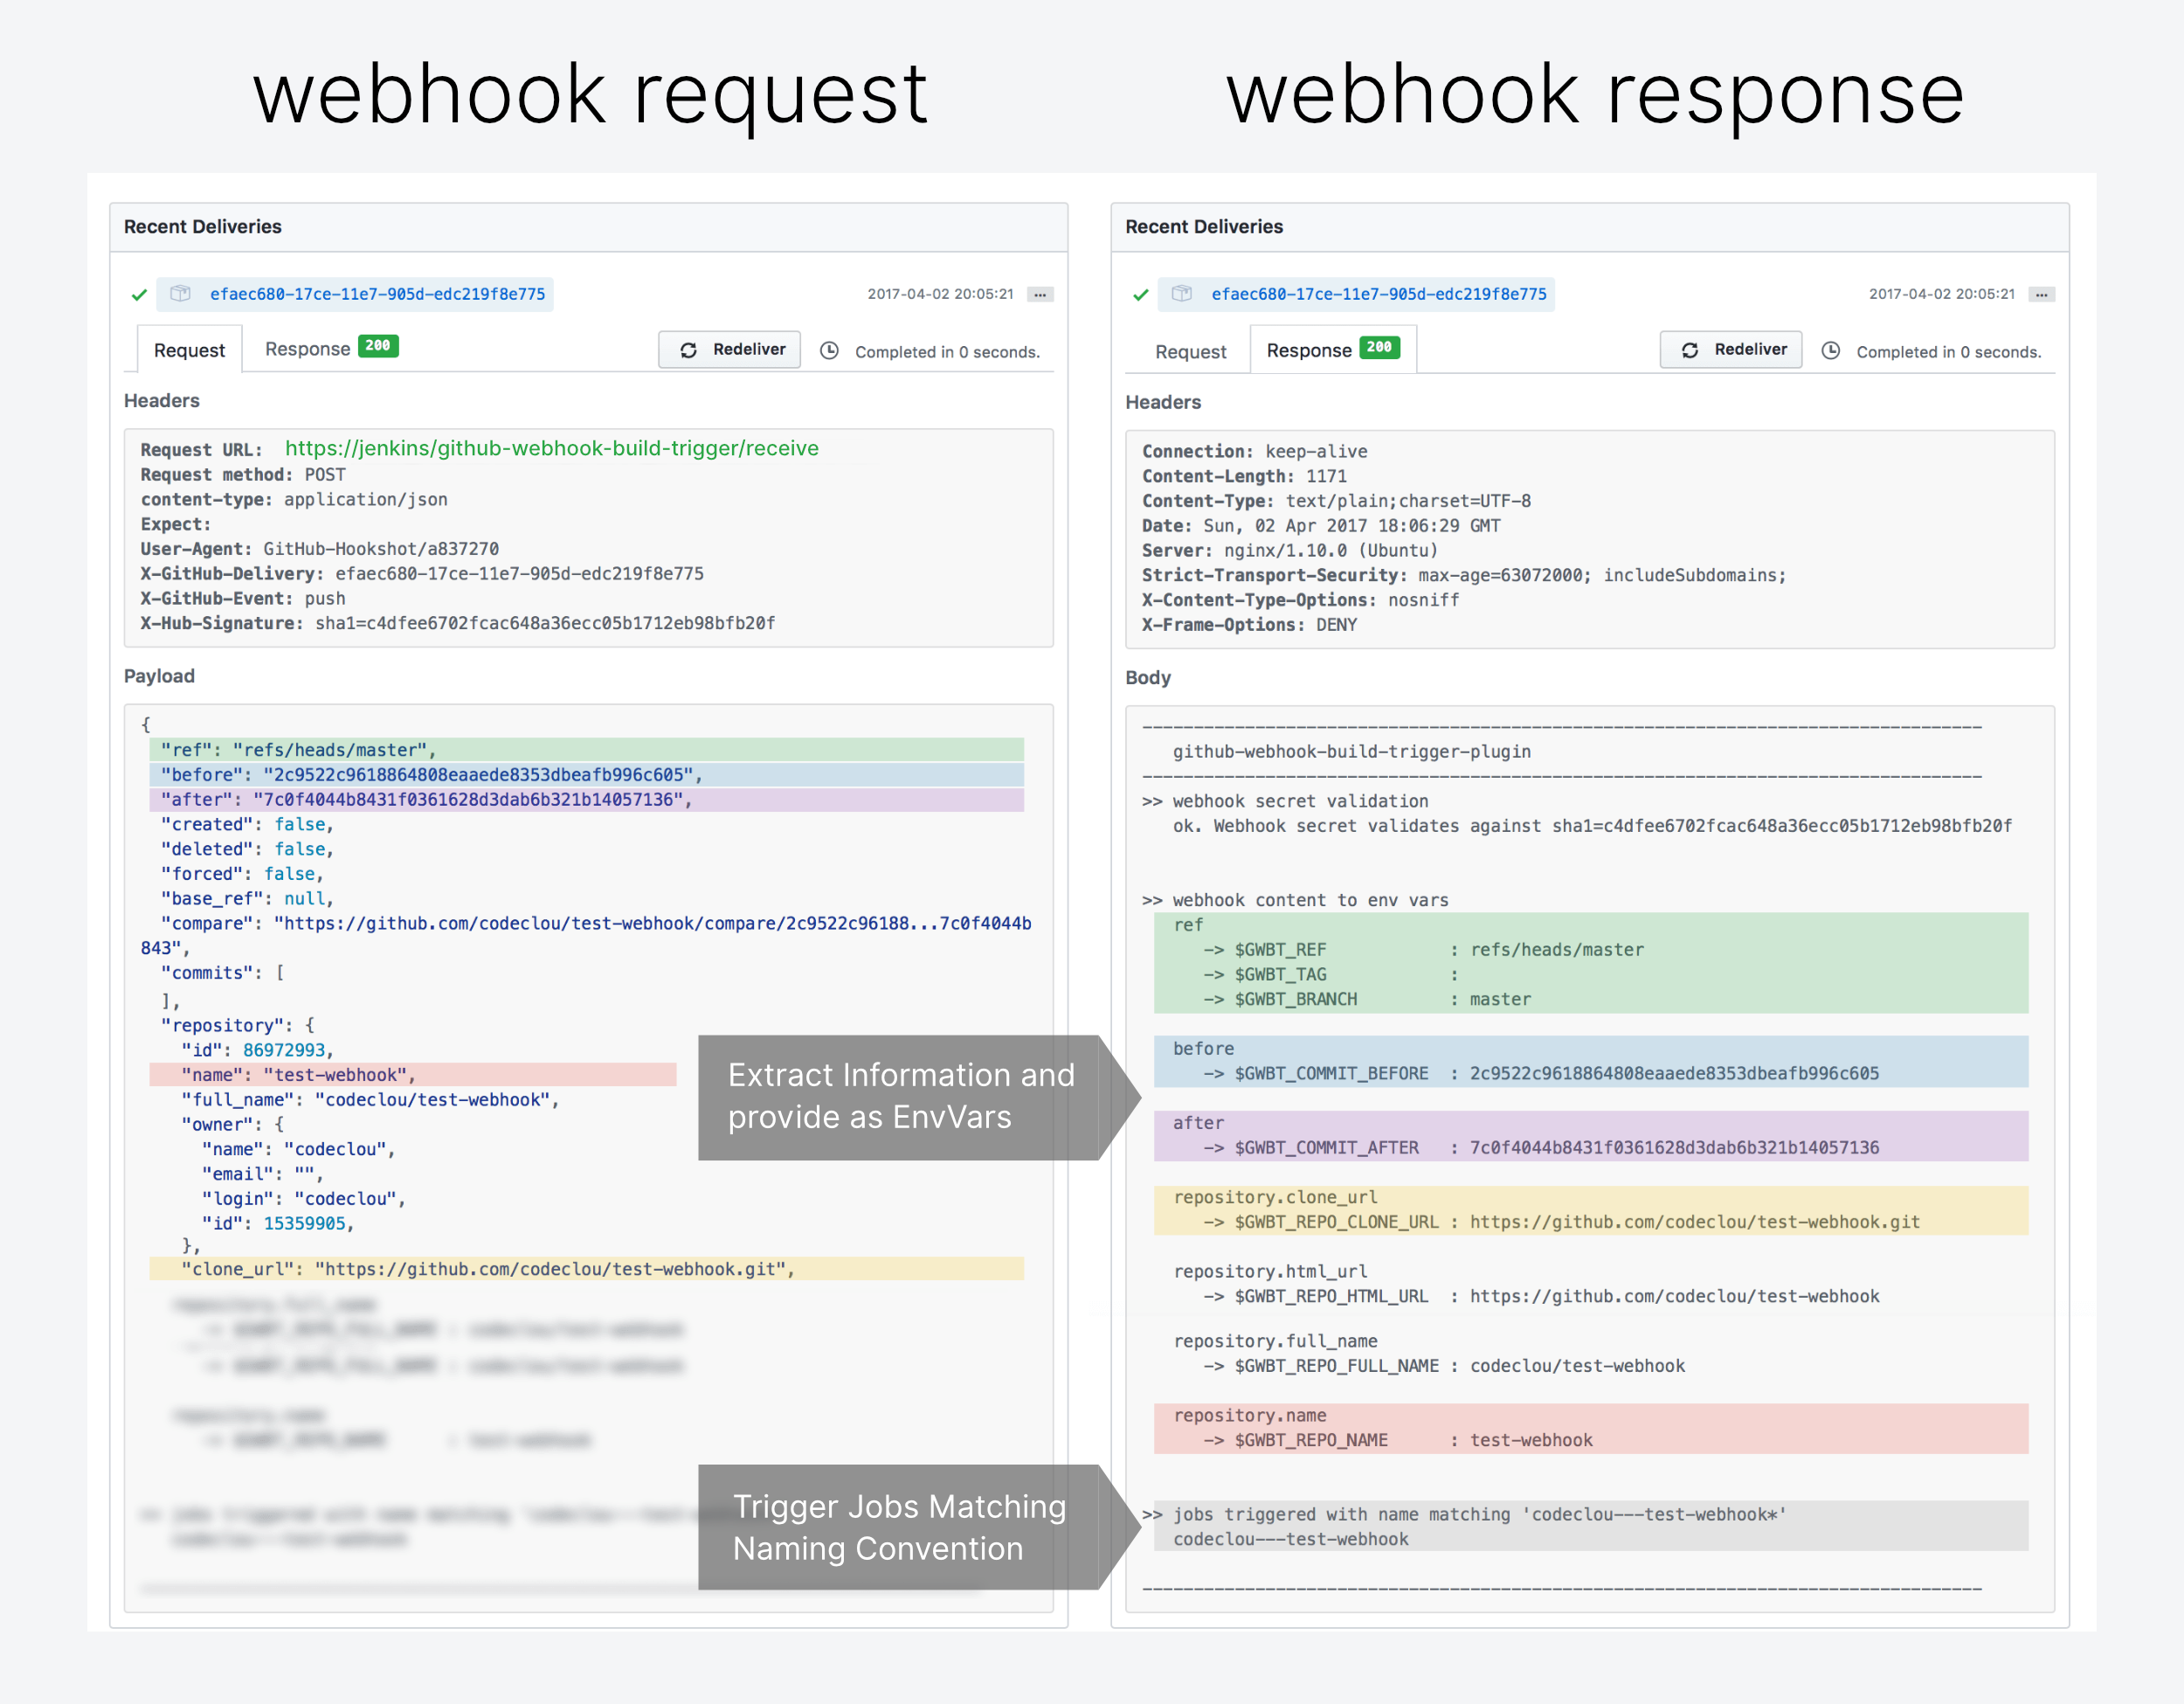 RoLink: Git-like Webhook Logging - Community Resources - Developer